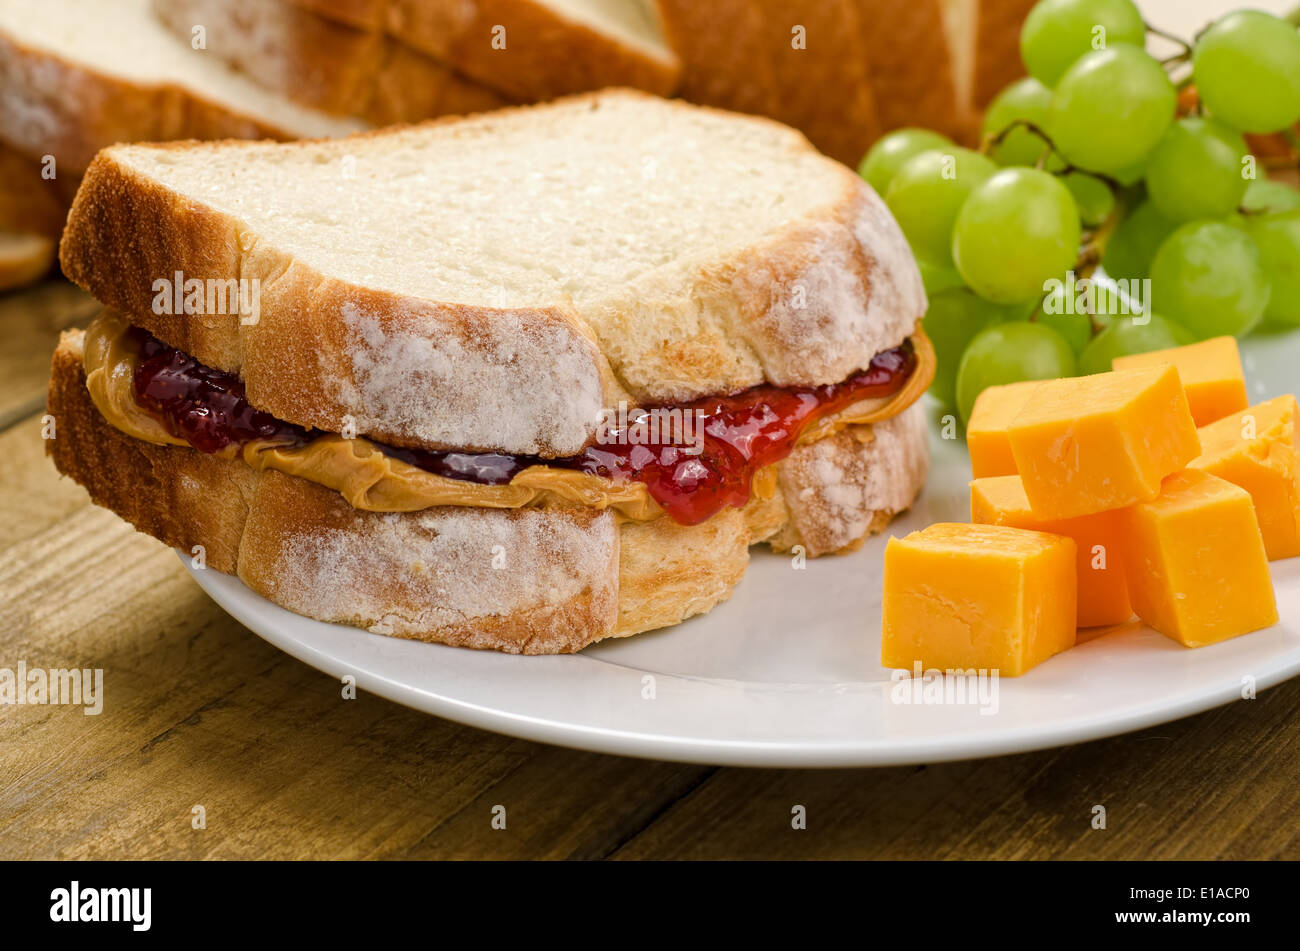 Un nutritivo sándwich de mantequilla de maní y mermelada con queso cheddar y uvas. Foto de stock